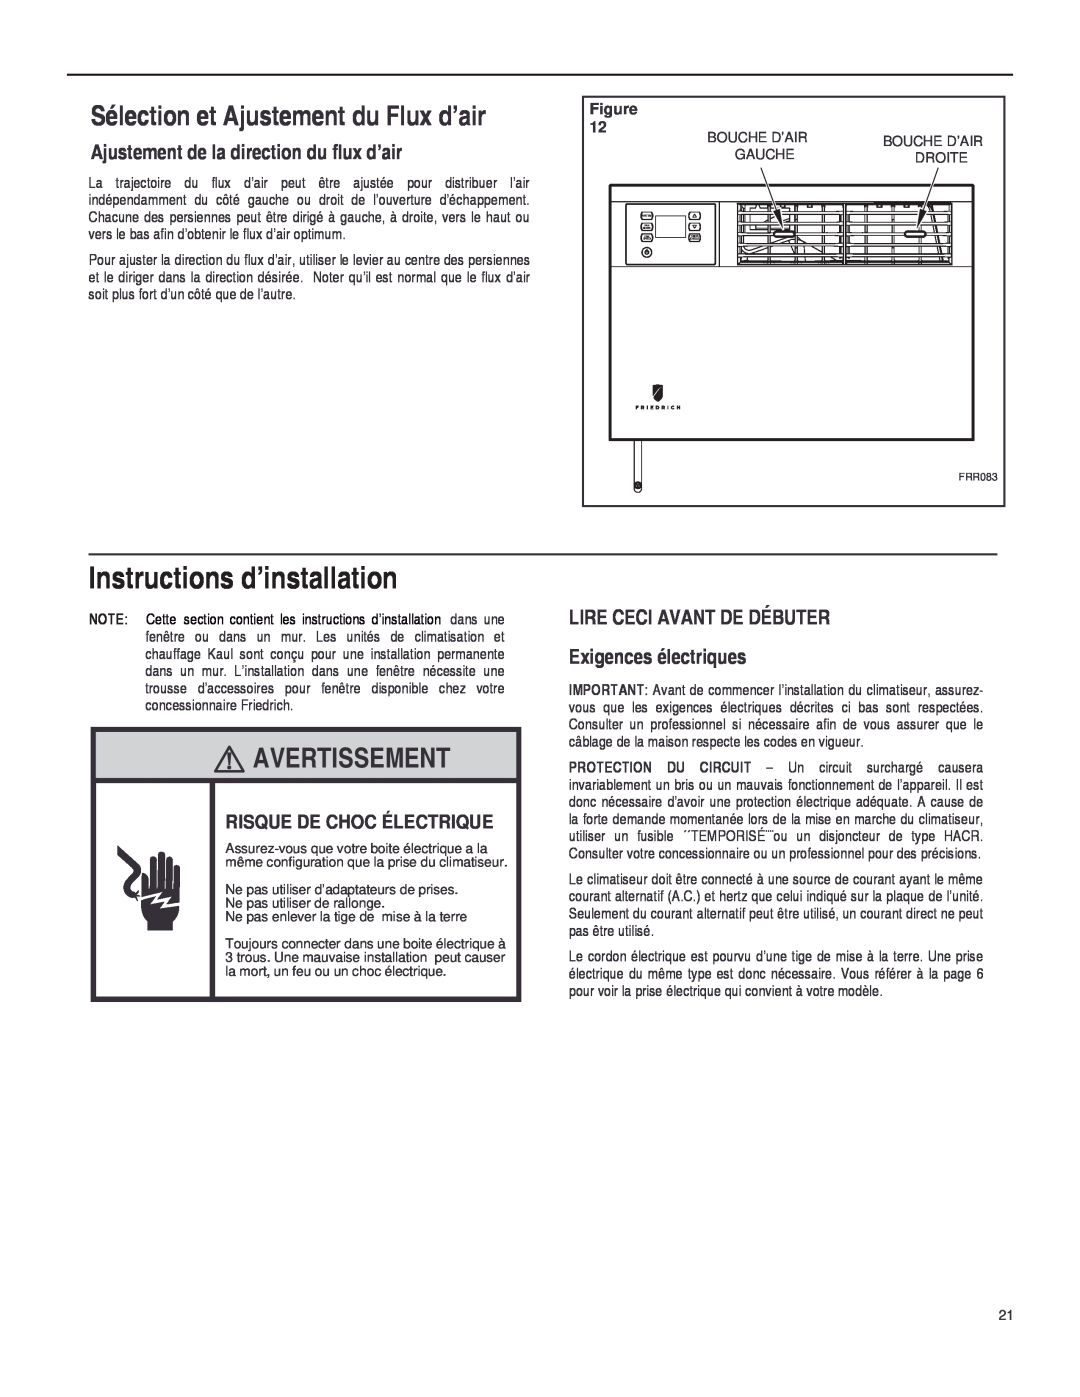 Friedrich SQ06 Instructions d’installation, Sélection et Ajustement du Flux d’air, Avertissement, Figure, Bouche D’Air 